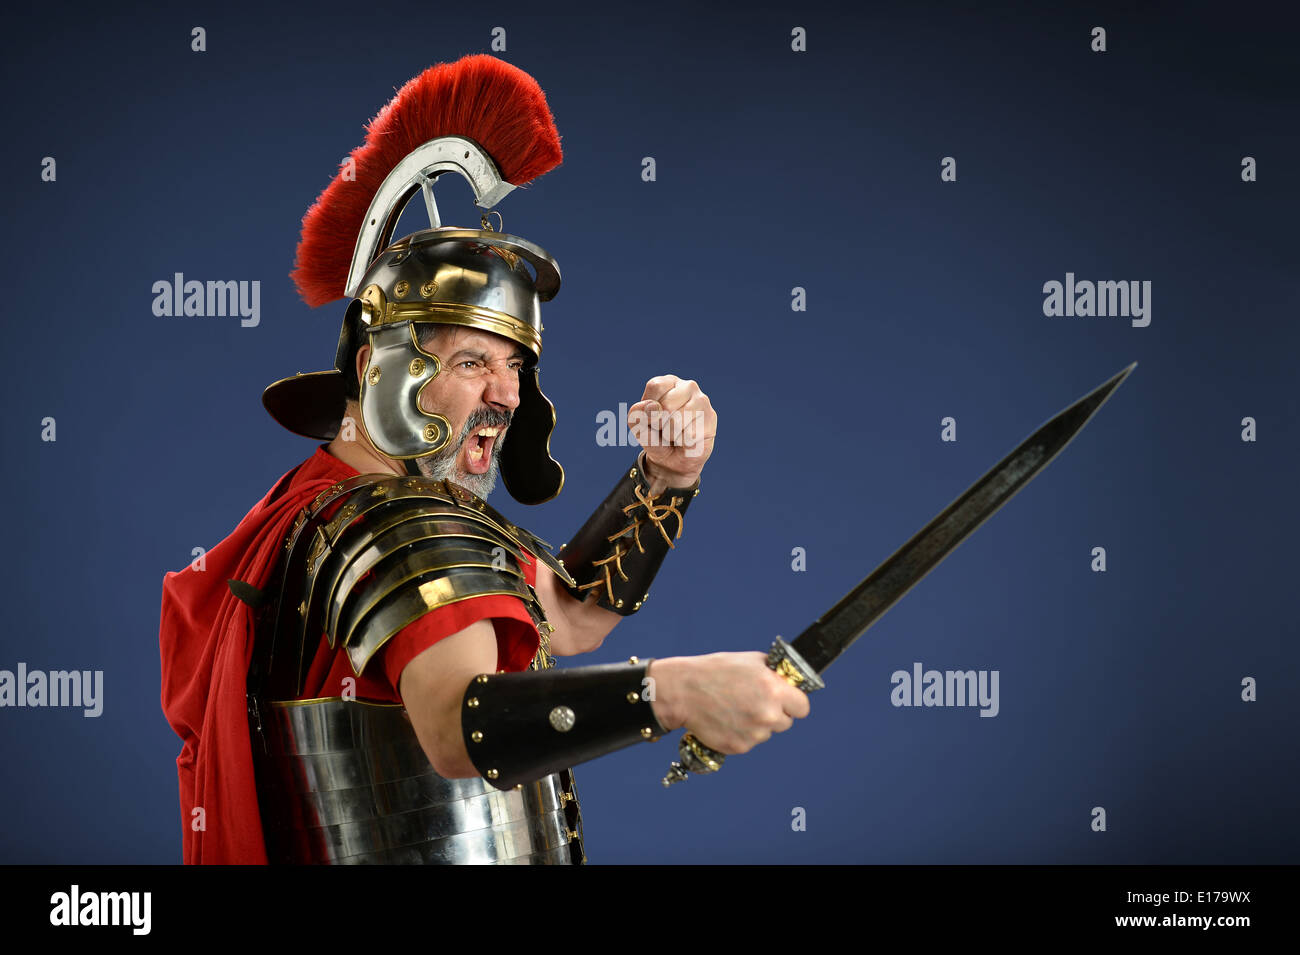 Römischer Zenturio schreiend und mit Schwert Stockfotografie - Alamy